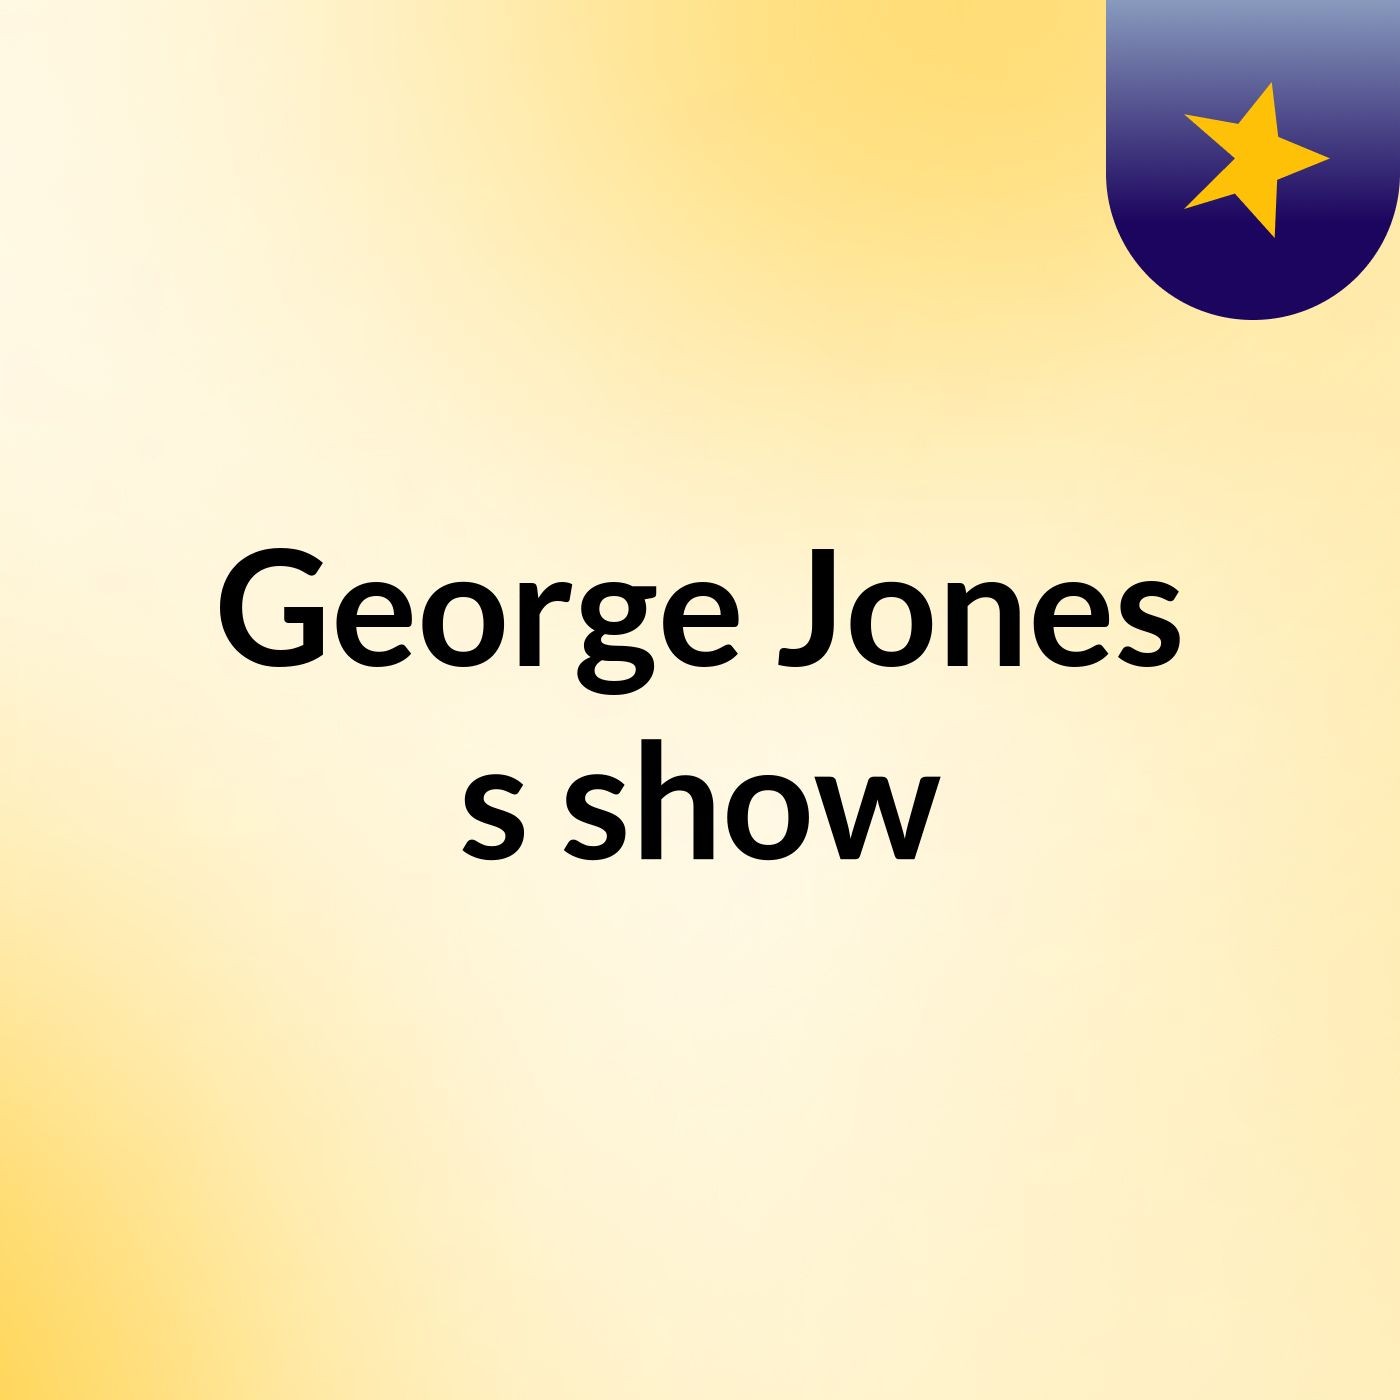 Episode 4 - George Jones's show